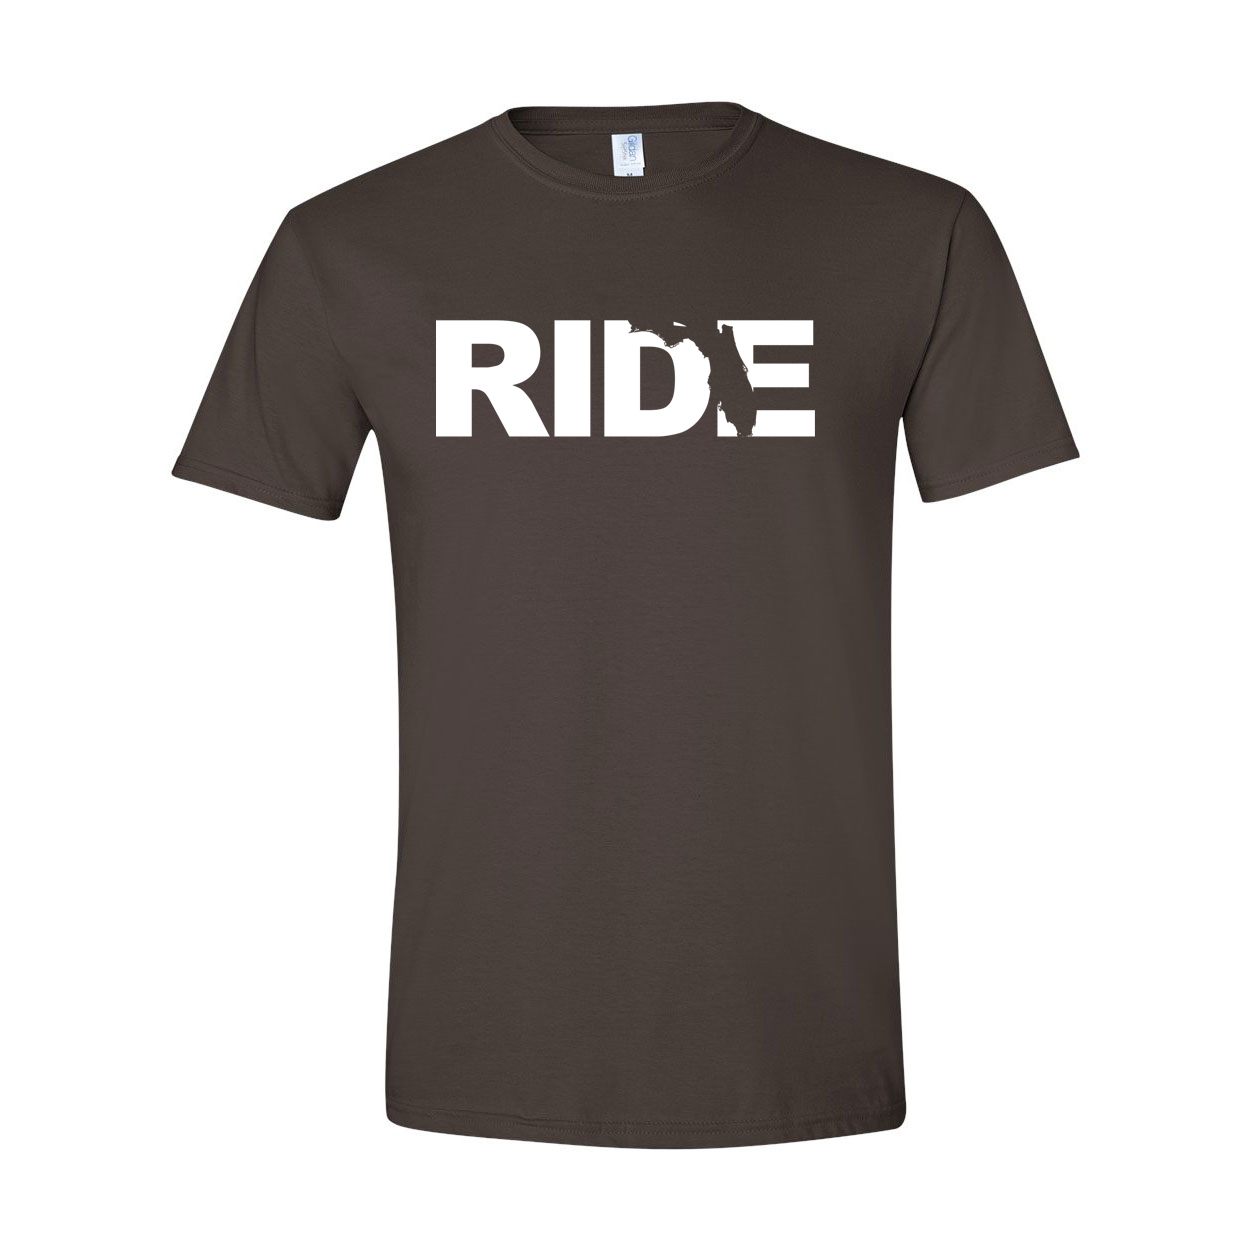 Ride Florida Classic T-Shirt Dark Chocolate Brown (White Logo)